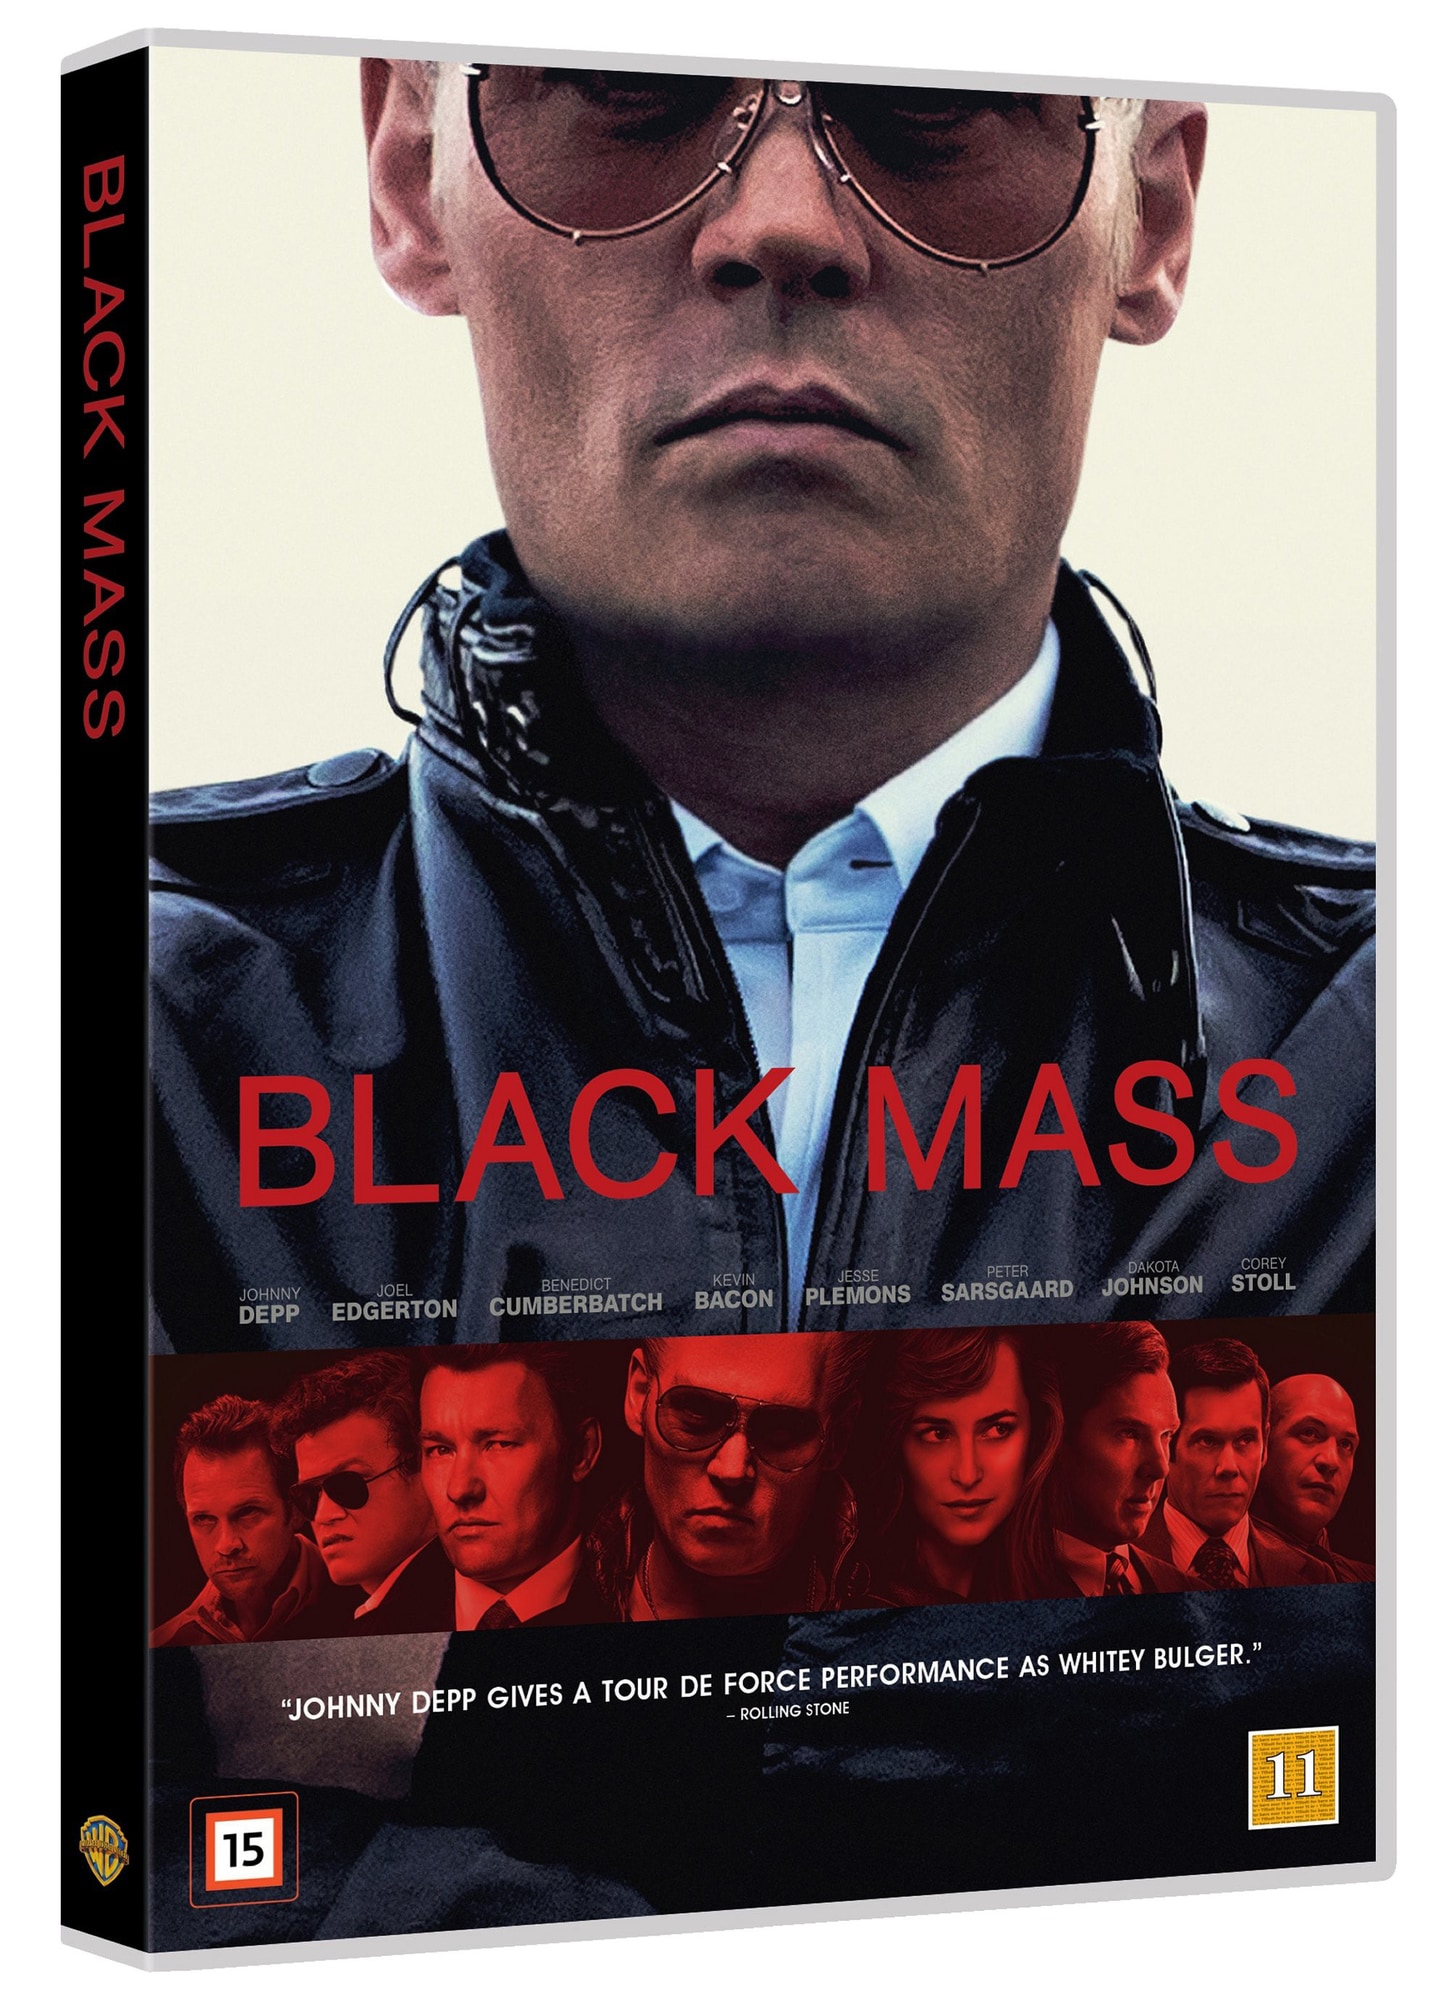 Black Mass - DVD | Elgiganten